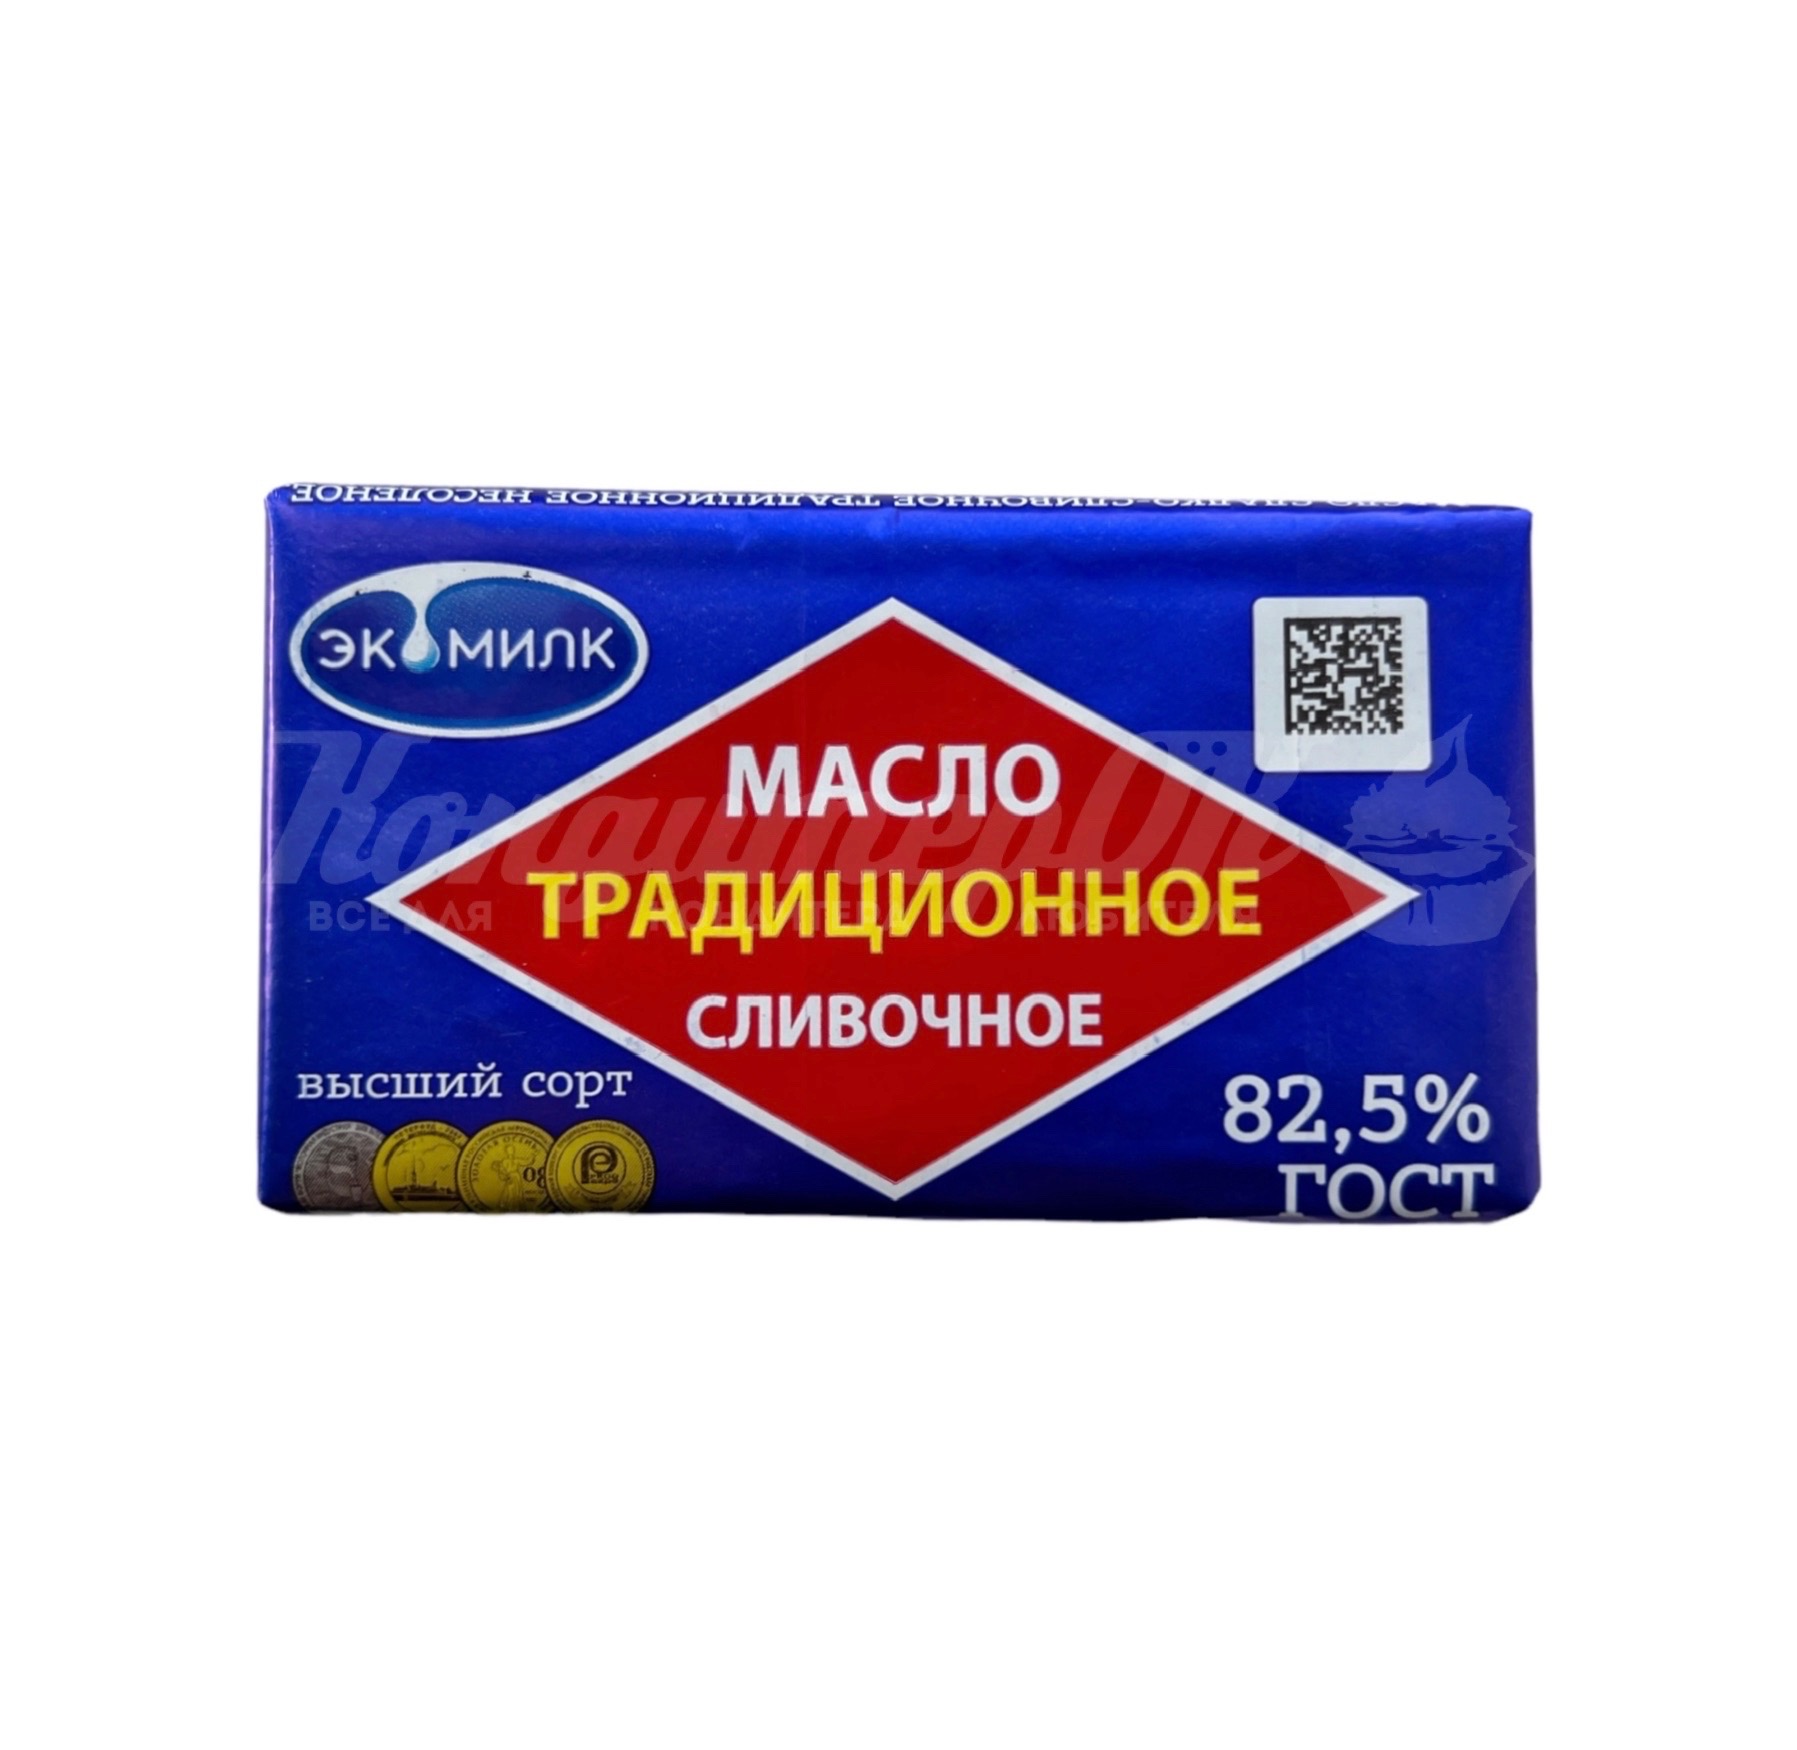 Масло сливочное Традиционное Экомилк 82,5% 180 г